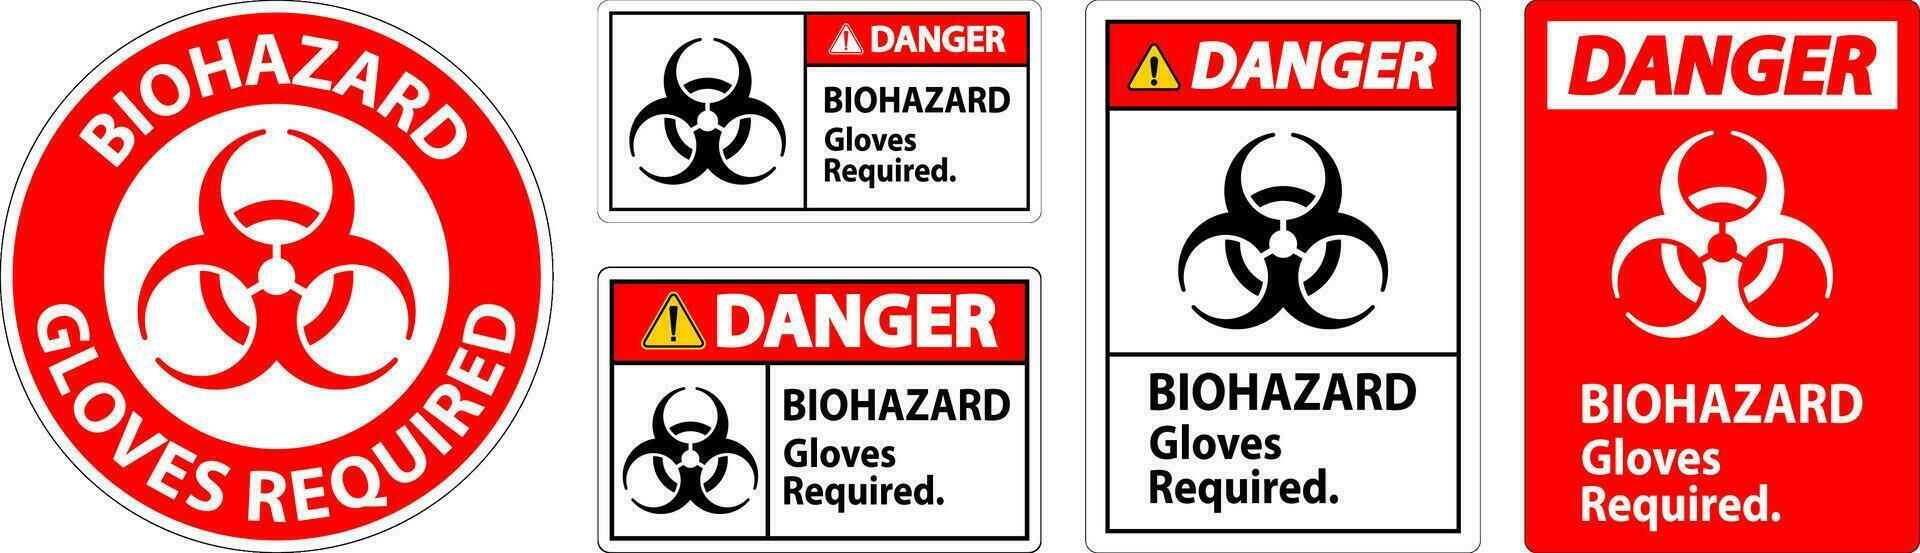 Danger biologique danger étiquette Danger biologique gants obligatoire vecteur